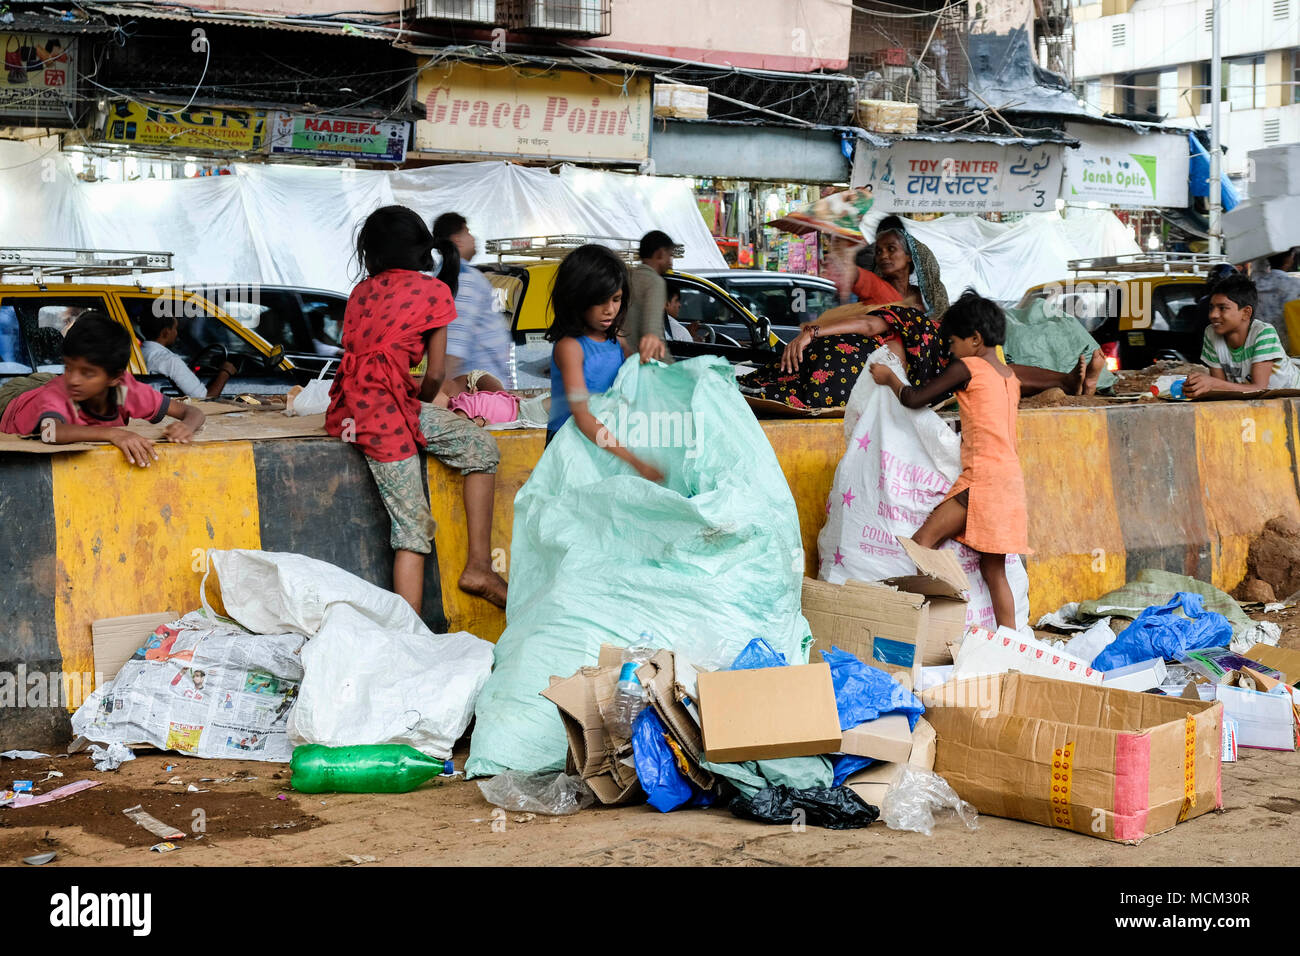 Straßenkinder arbeiten beim Sammeln von Pappe und Müll in der Innenstadt von Mumbai. Viel Verkehr hinter dem Hotel, Schild mit der Aufschrift „Grace Point“, Mumbai, Indien Stockfoto